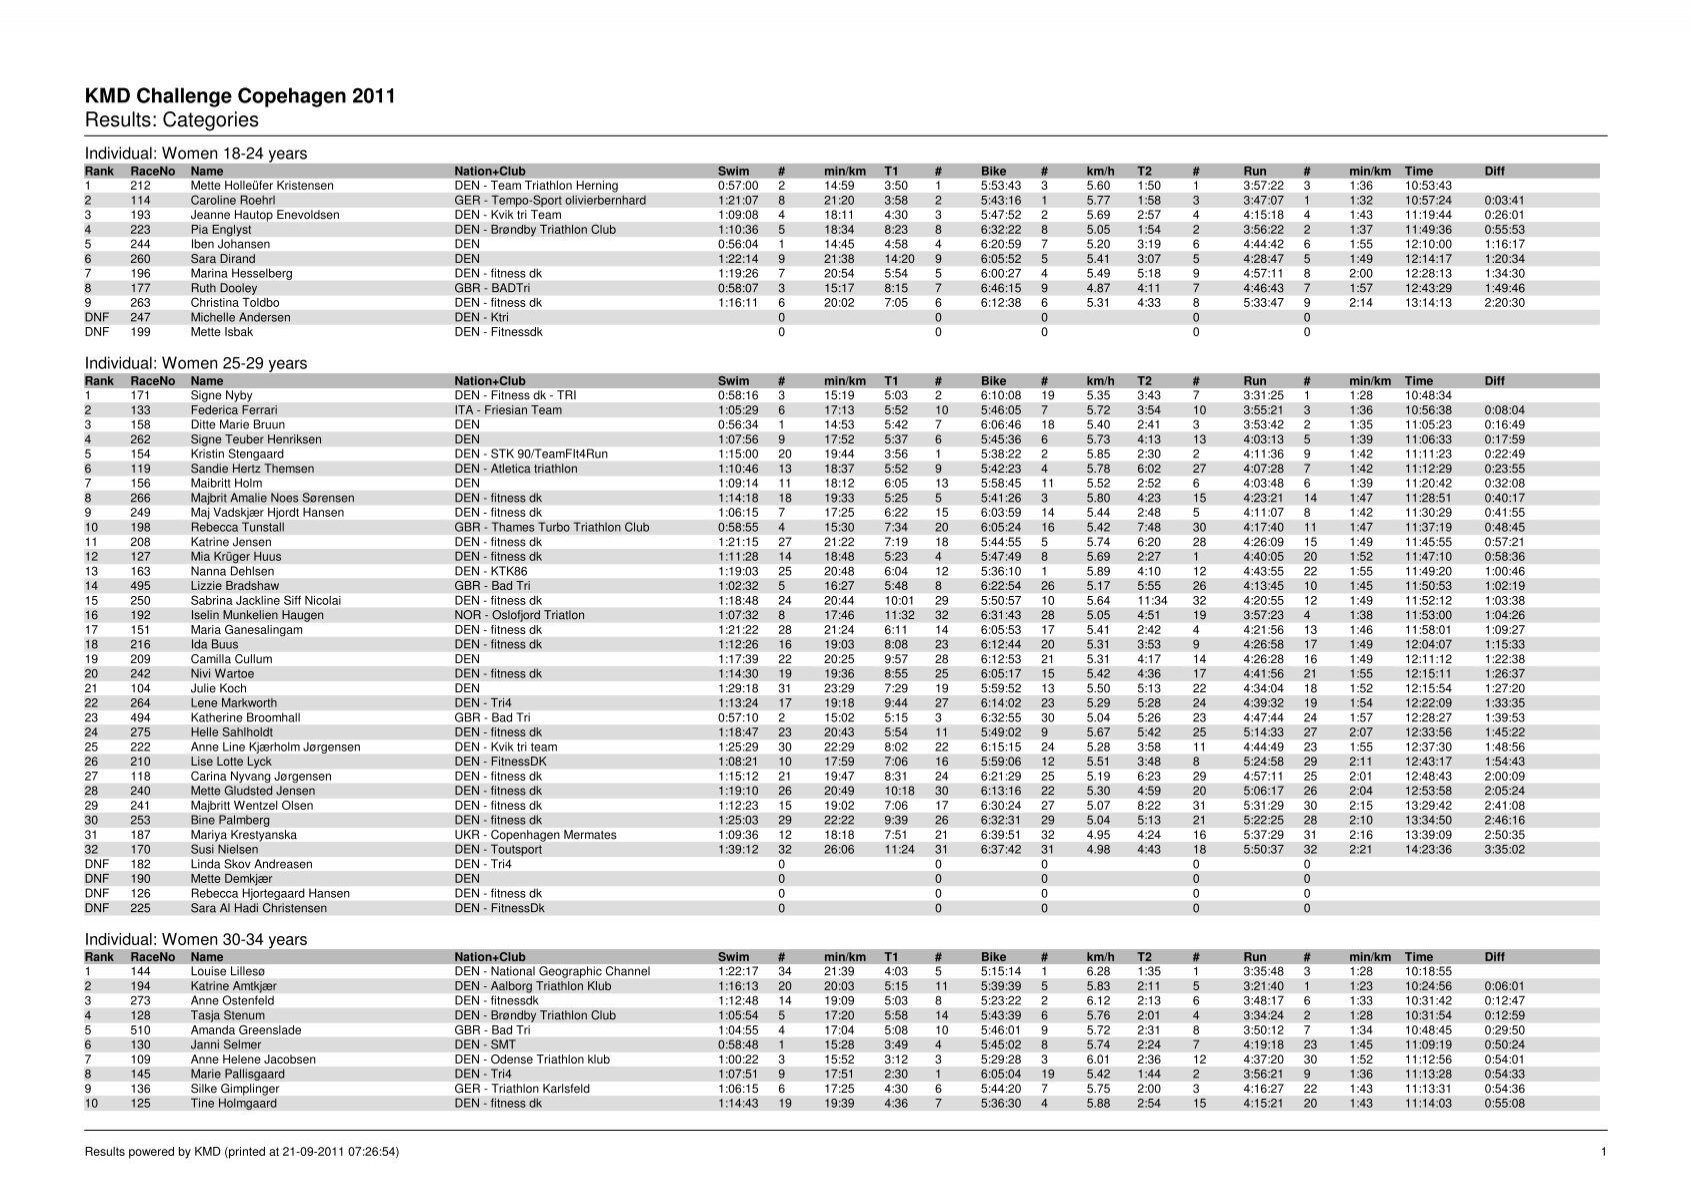 tilbagemeldinger Dinkarville enkelt gang KMD Challenge Copehagen 2011 Results ... - Challenge Family